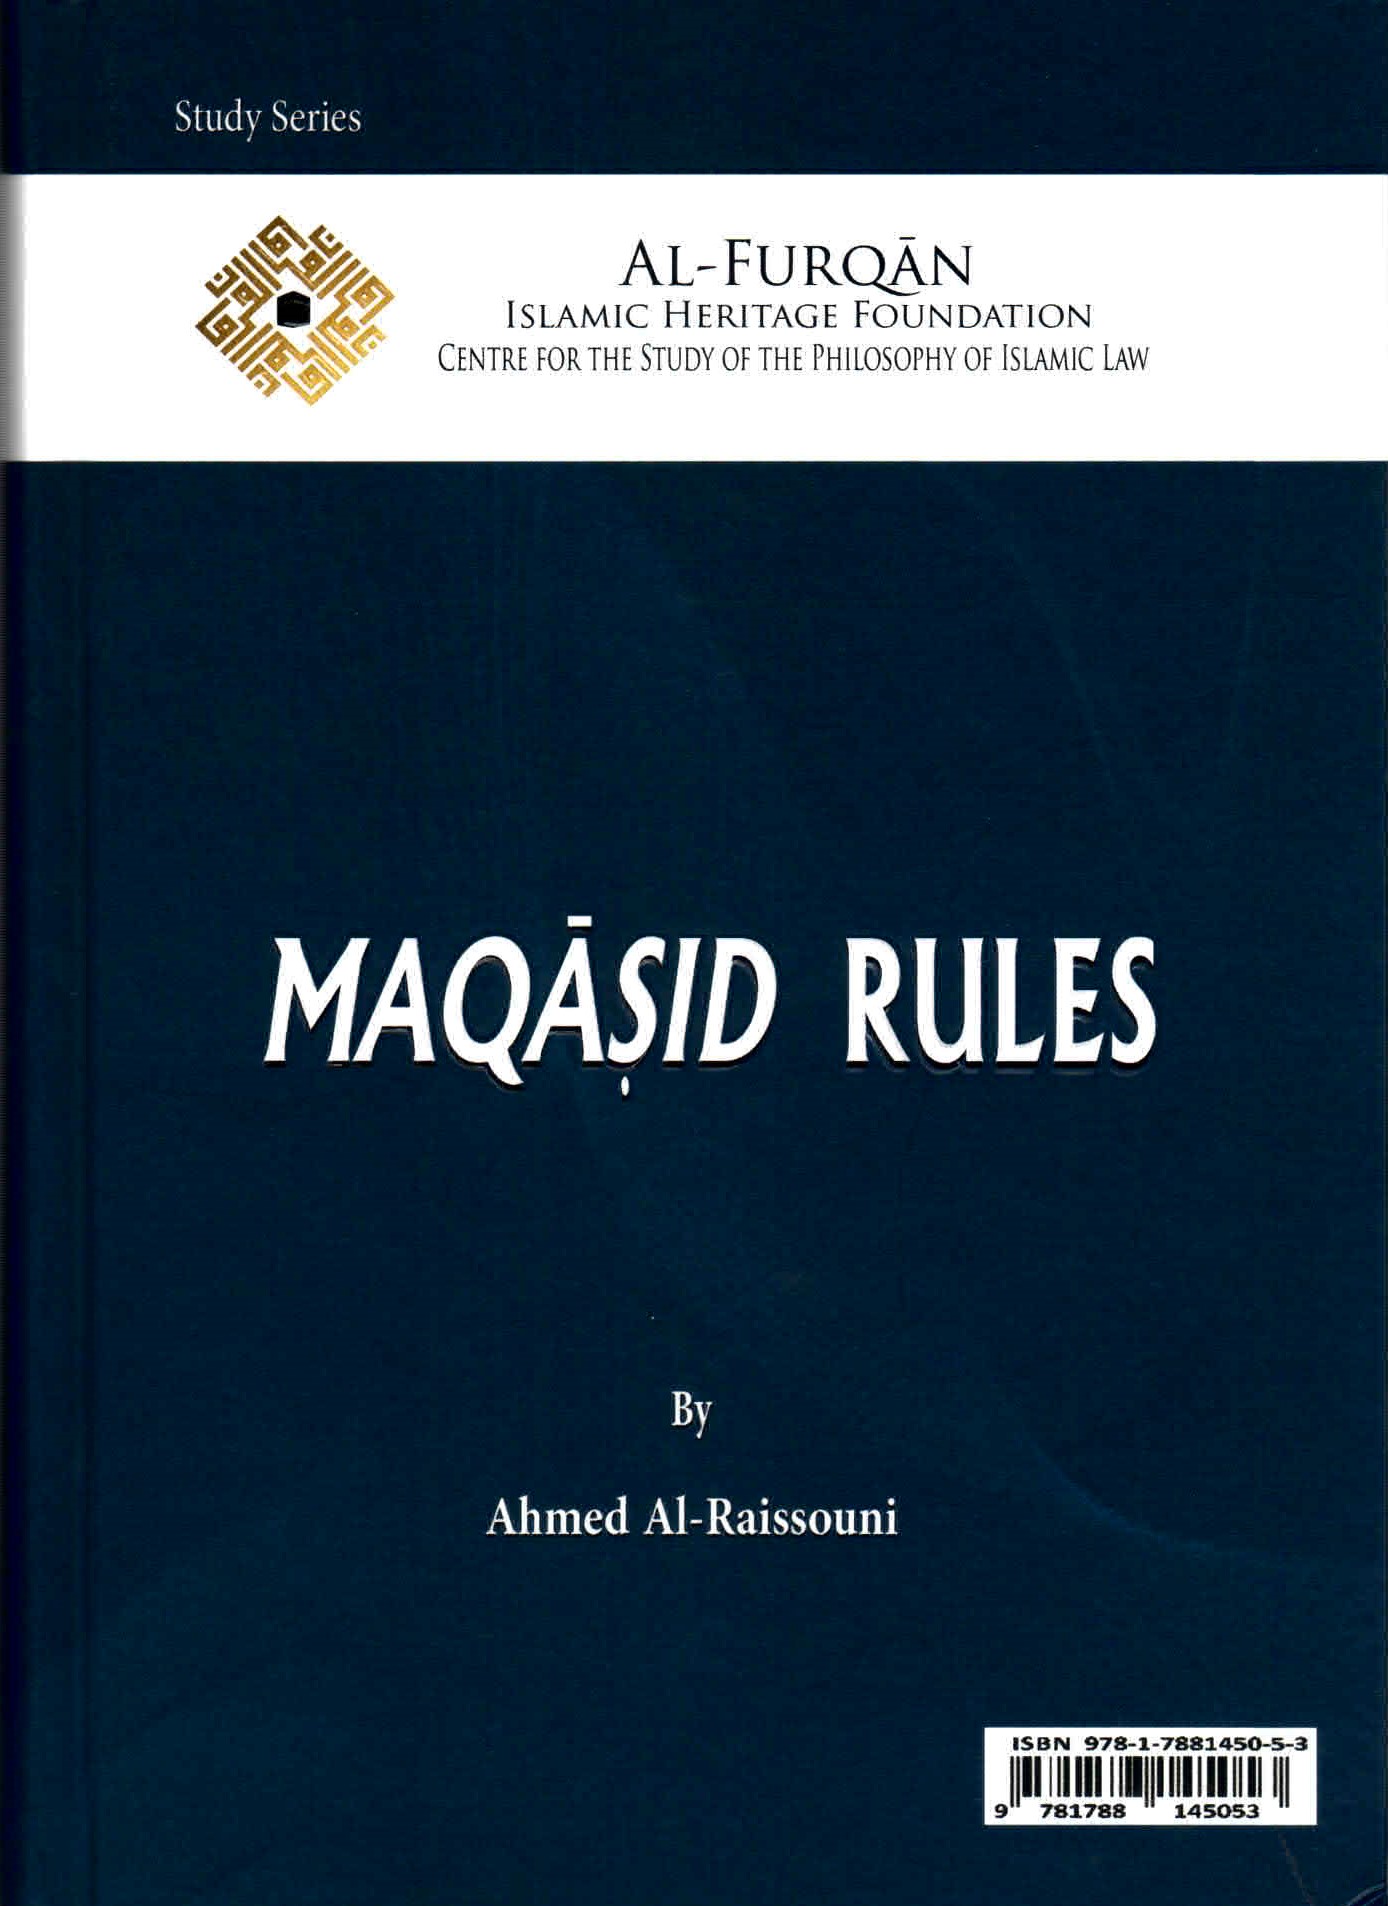 خلفية غلاف كتاب قواعد المقاصد للدكتور أحمد الريسوني.